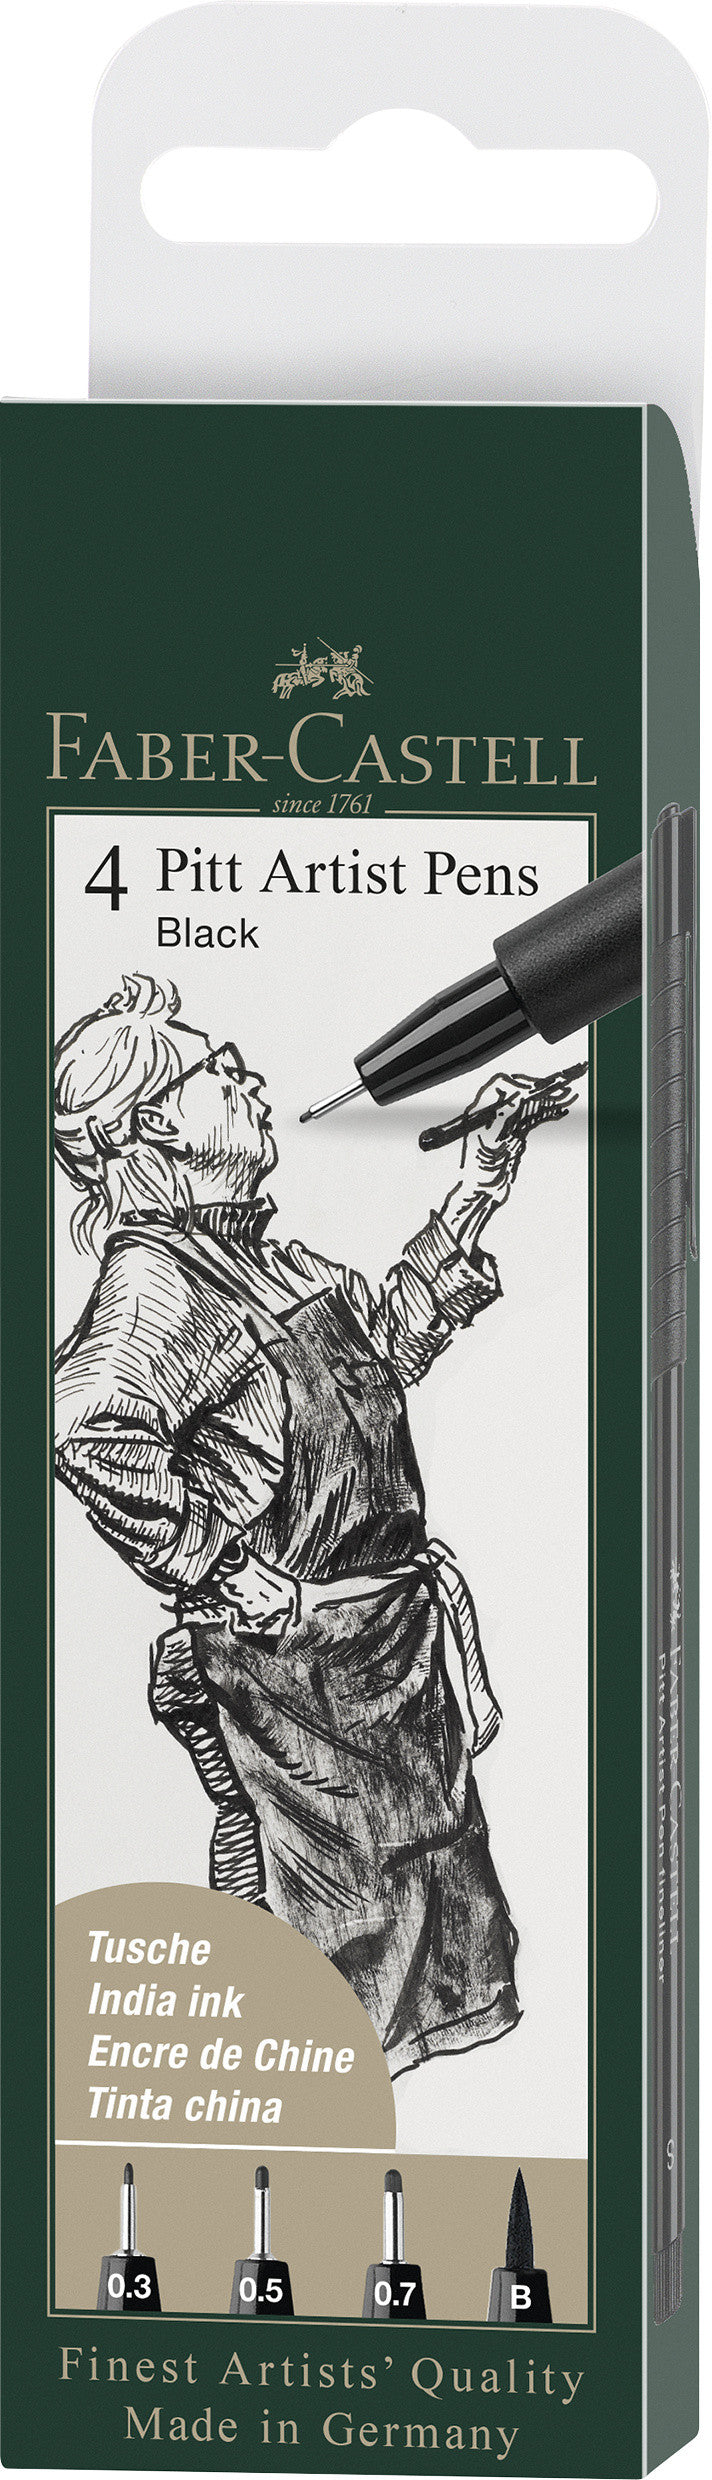 Pochette de 4 feutres Pitt artist Pen Assortiment Noir